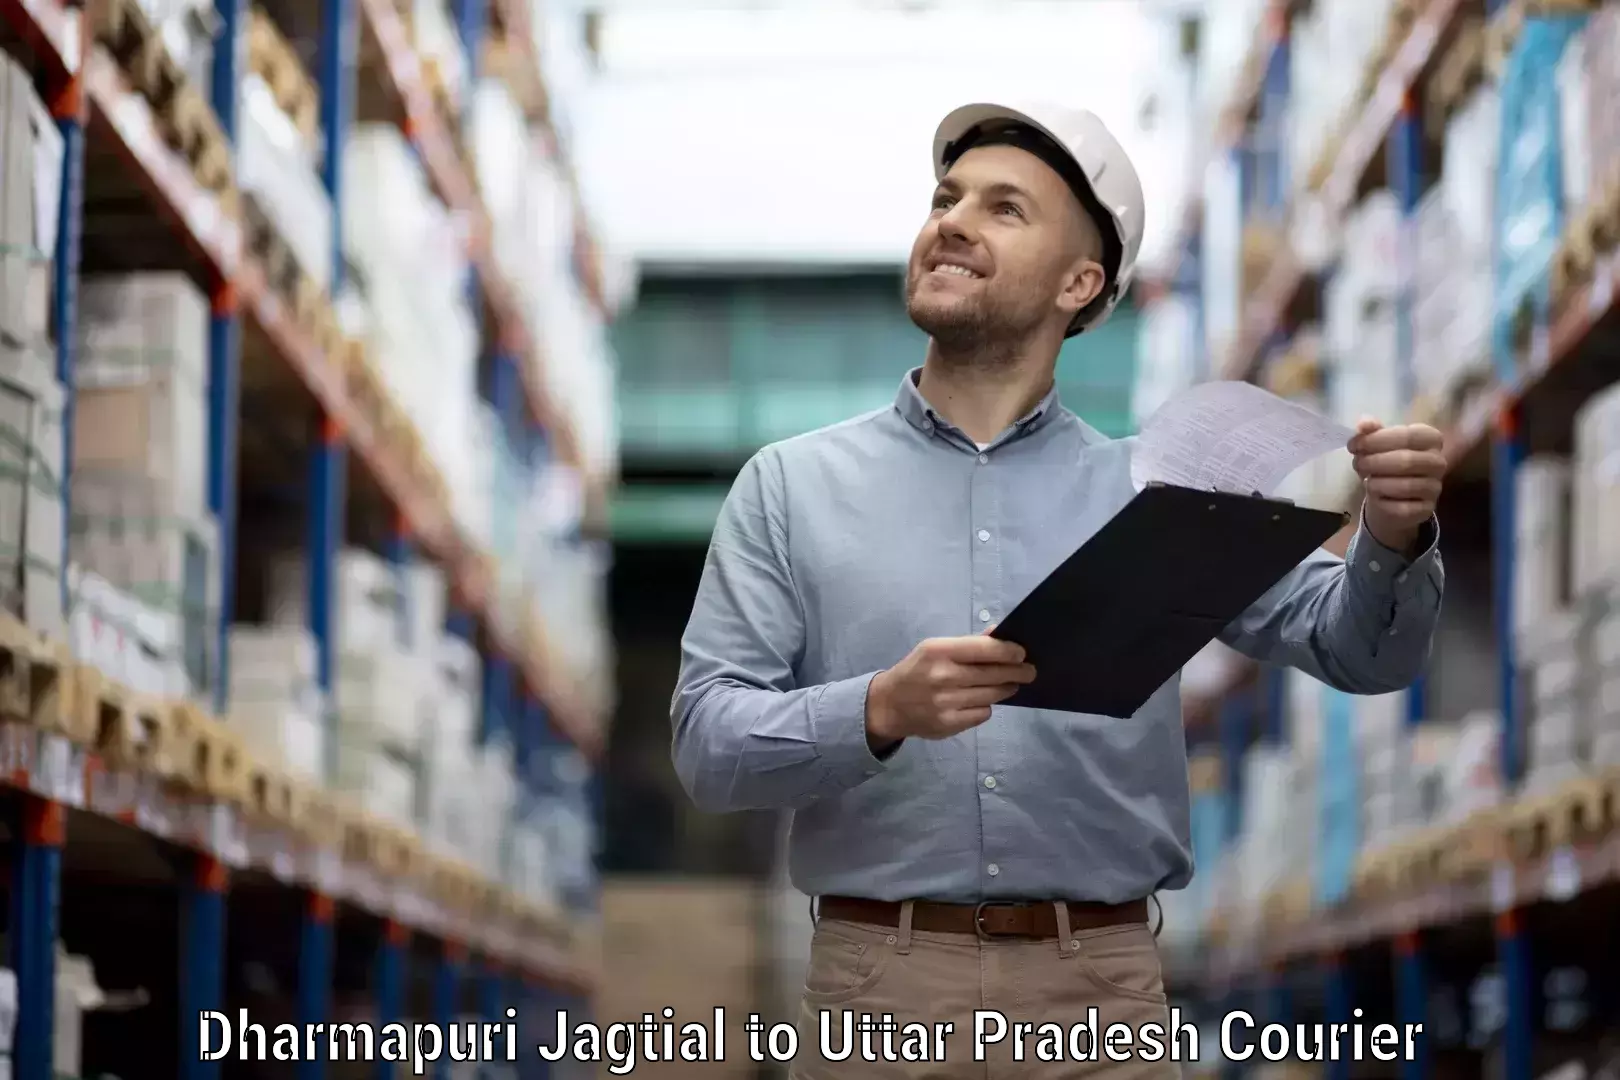 High-priority parcel service Dharmapuri Jagtial to Maudaha